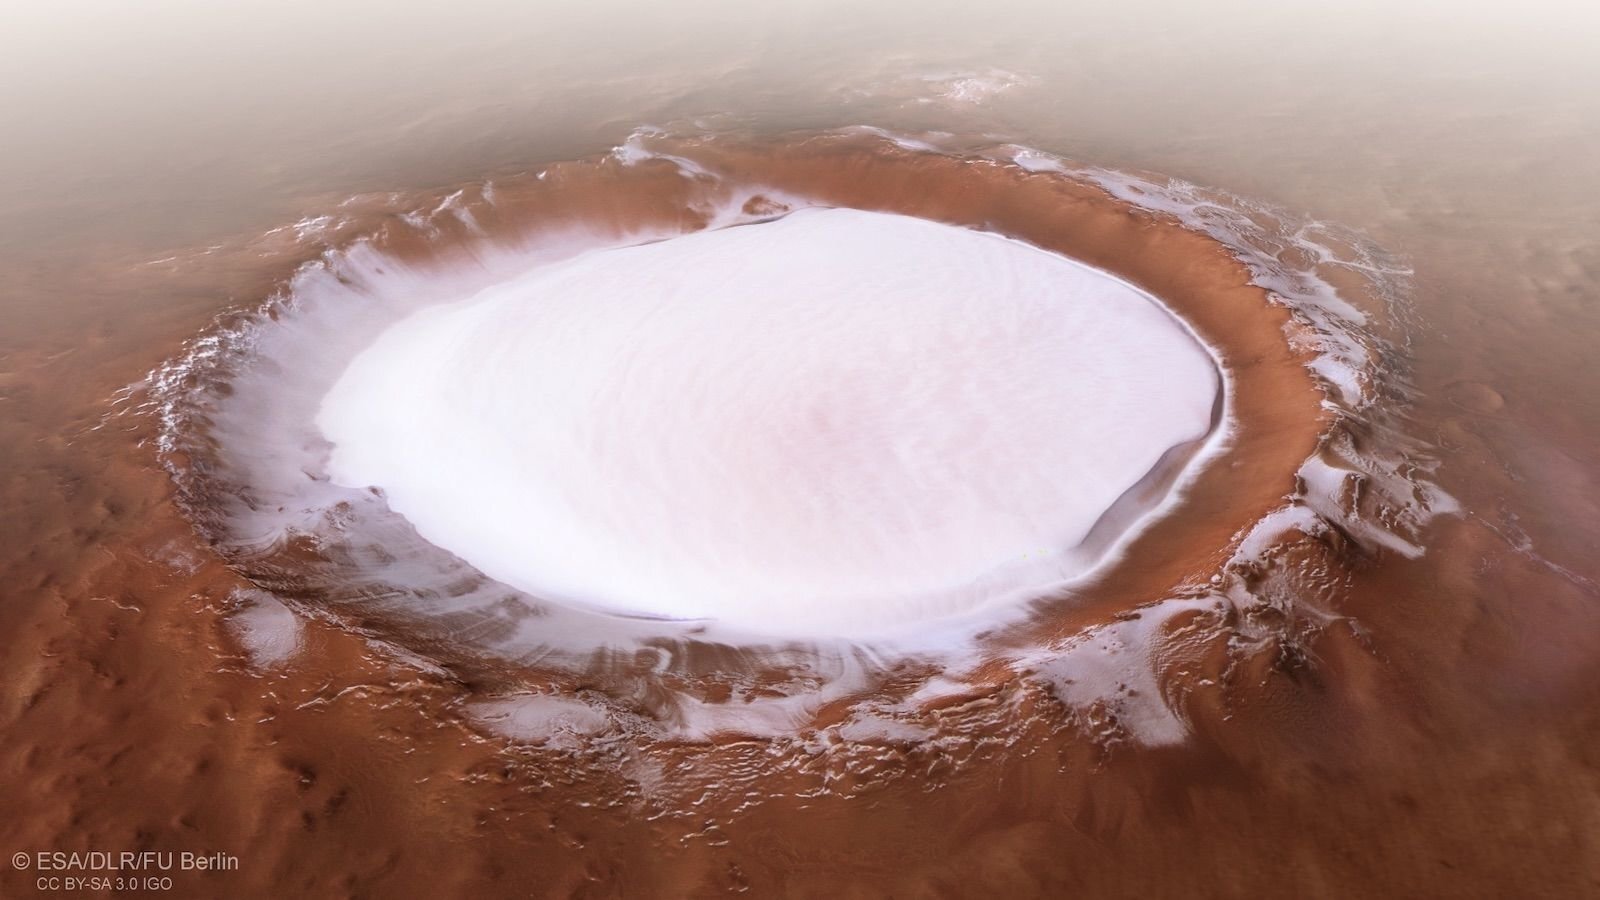 Η NASA ανακάλυψε νερό ελάχιστα κάτω από την επιφάνεια του πλανήτη Άρη